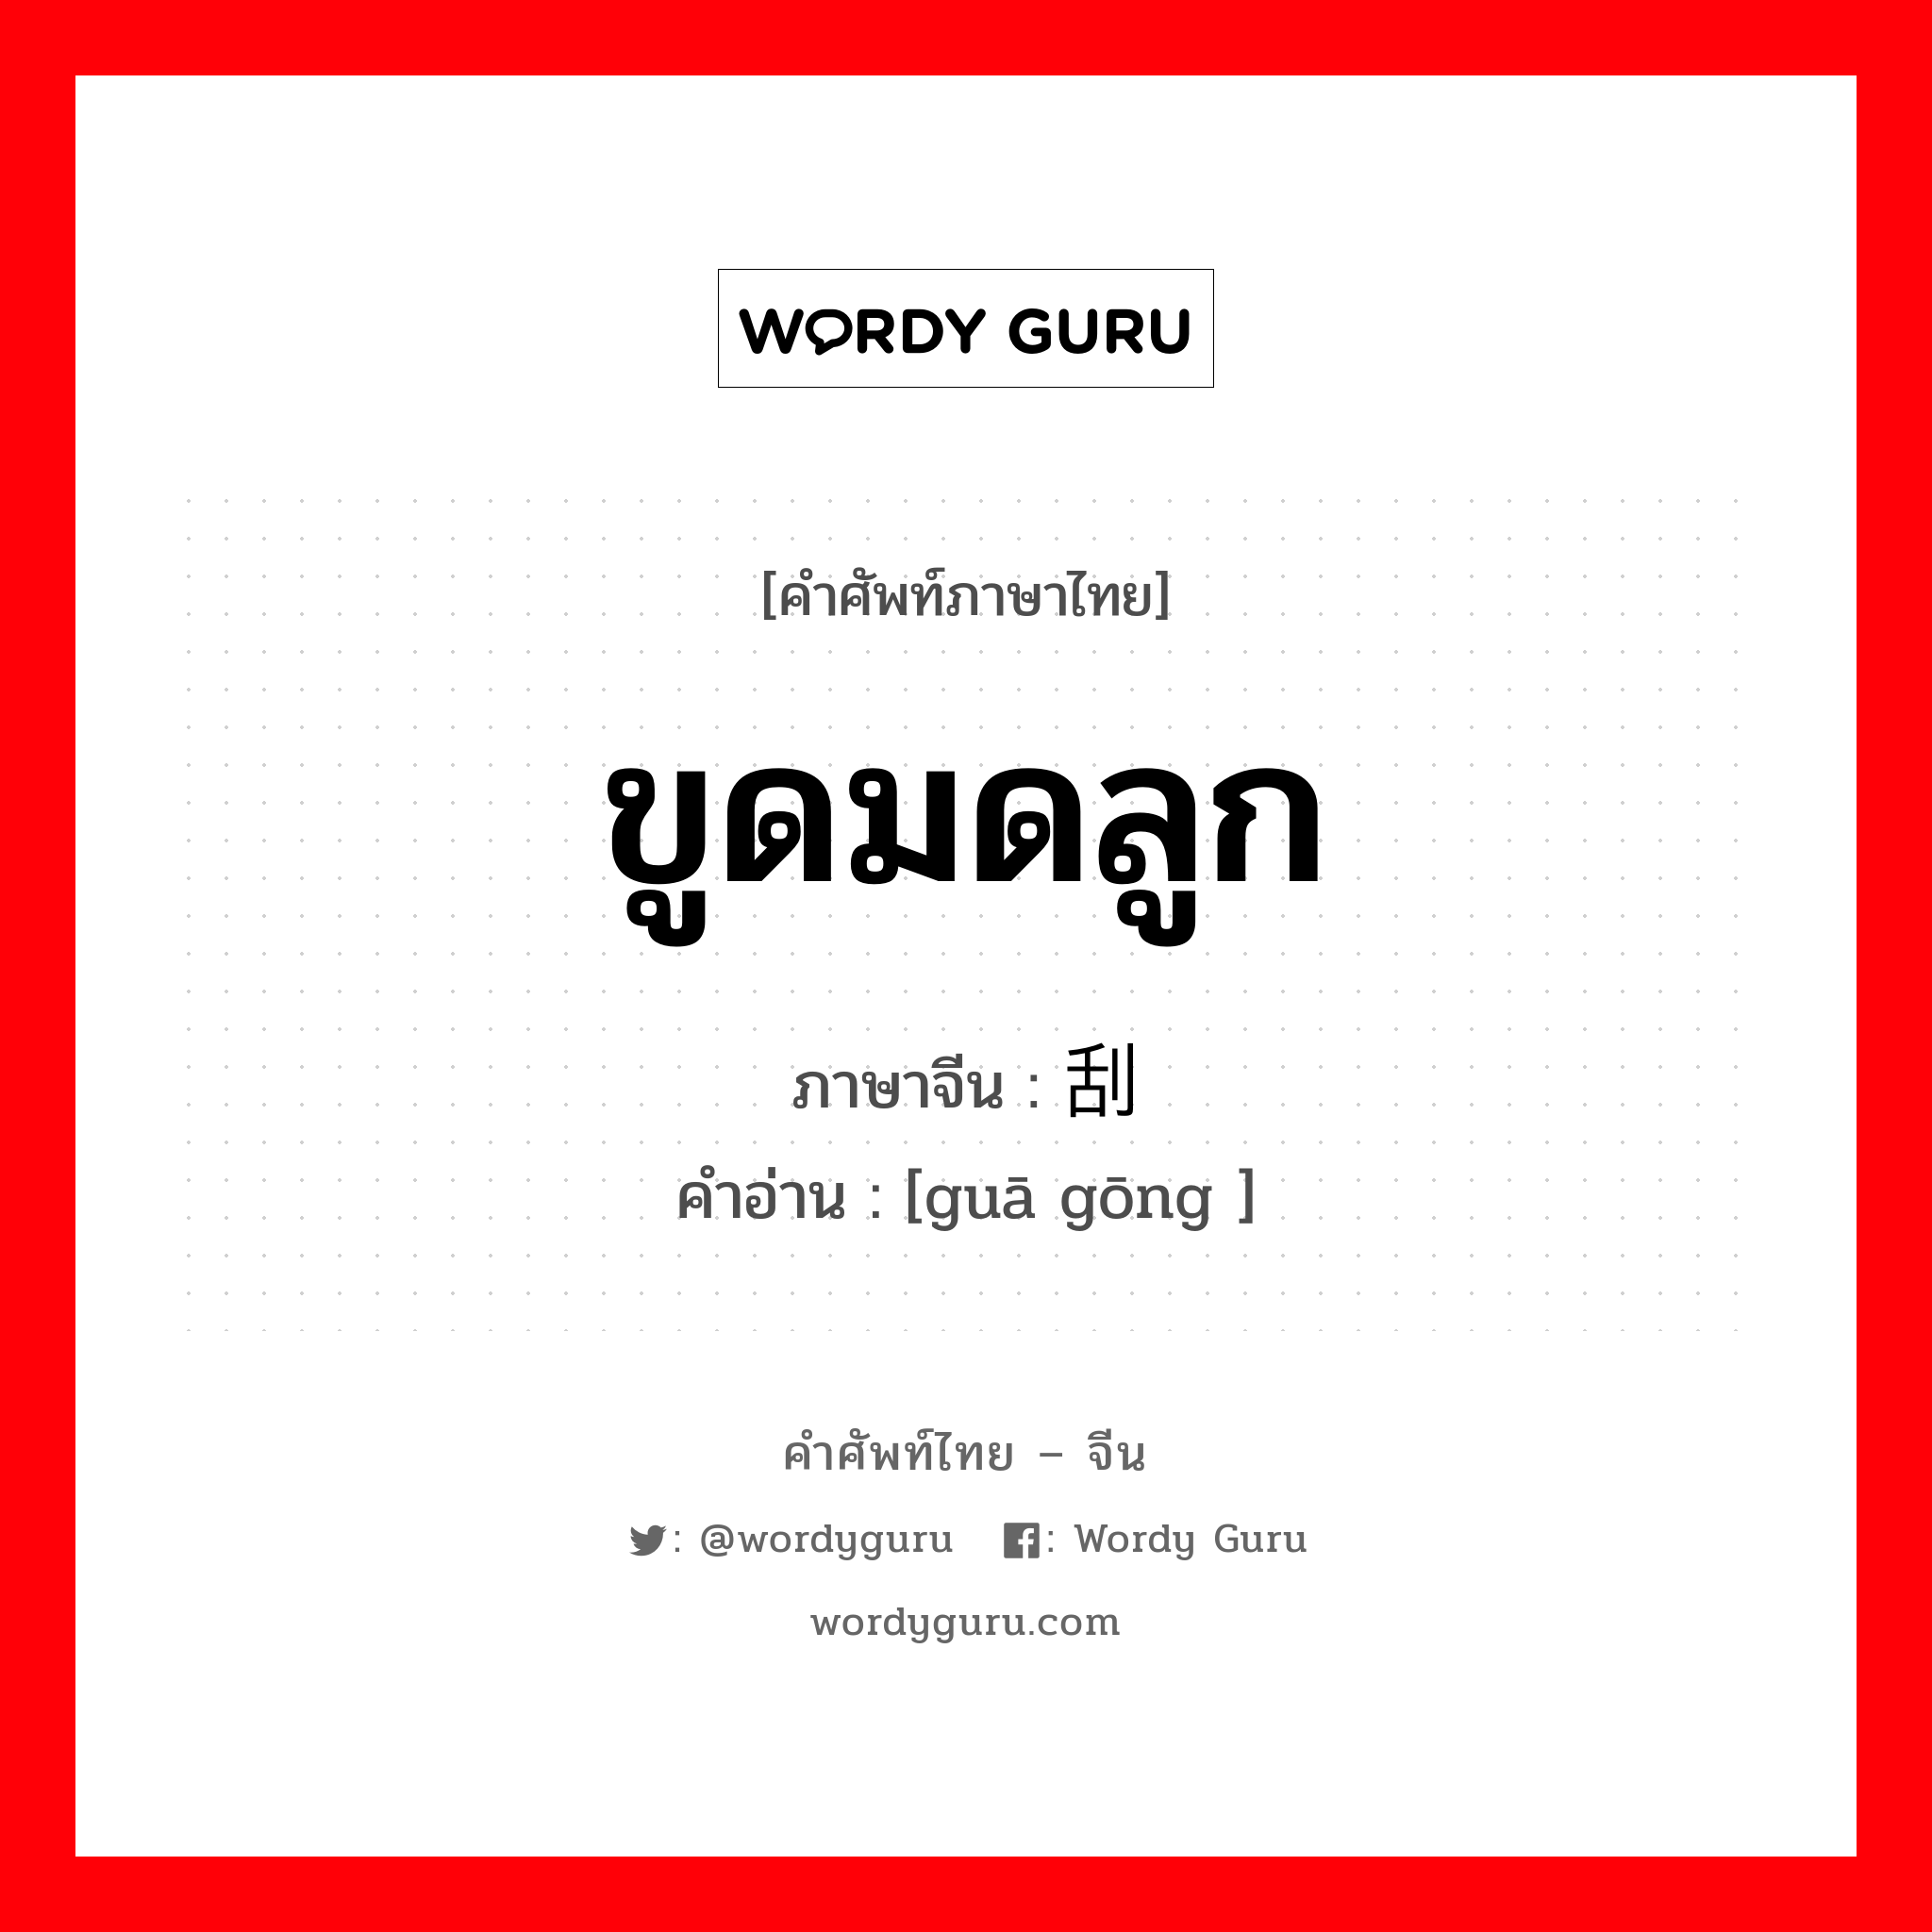 ขูดมดลูก ภาษาจีนคืออะไร, คำศัพท์ภาษาไทย - จีน ขูดมดลูก ภาษาจีน 刮宫 คำอ่าน [guā gōng ]